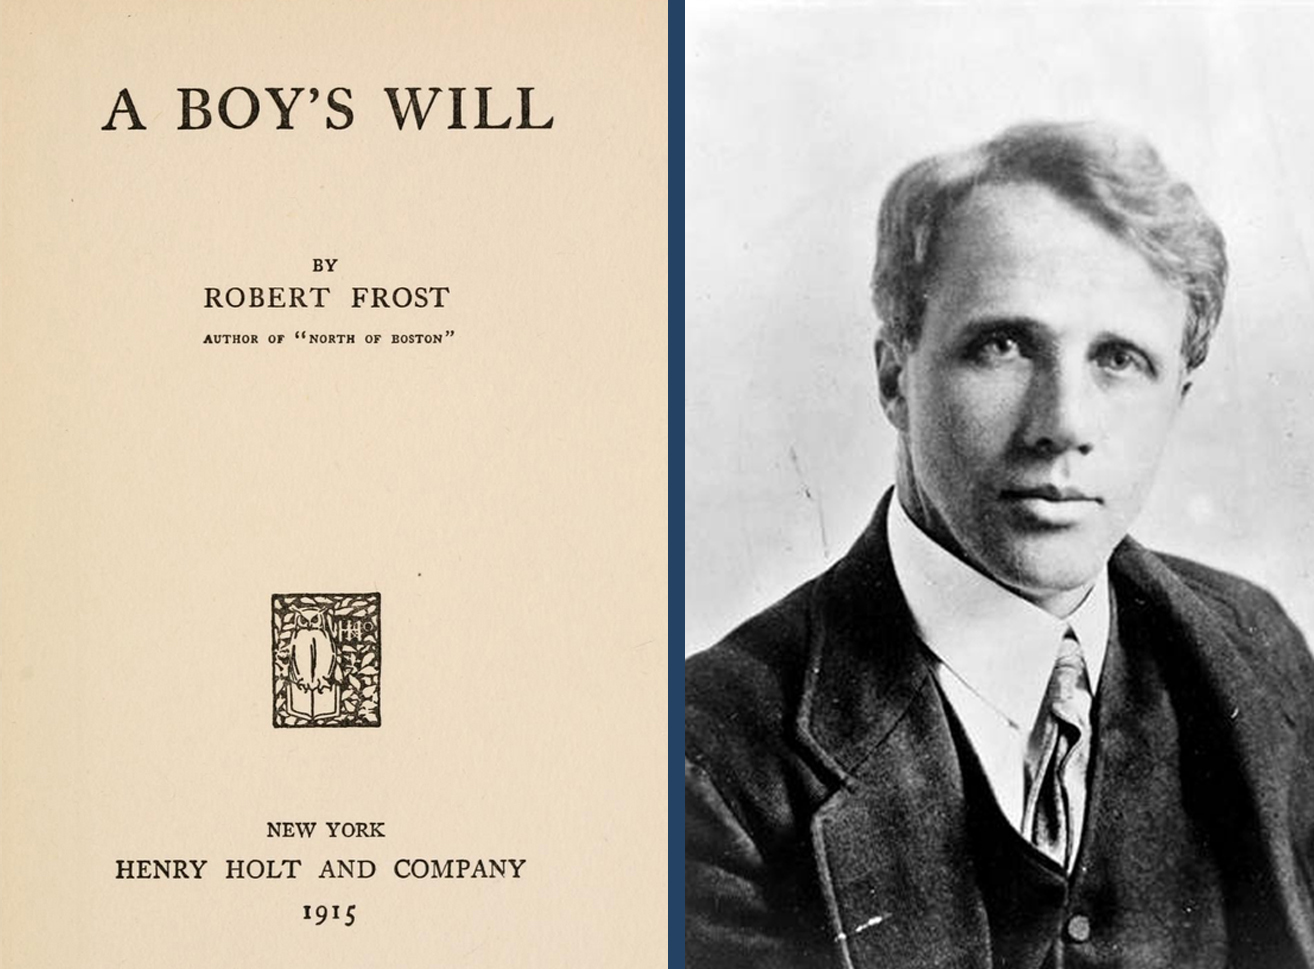 Titelseite von A Boy's Will und Porträt von Robert Frost